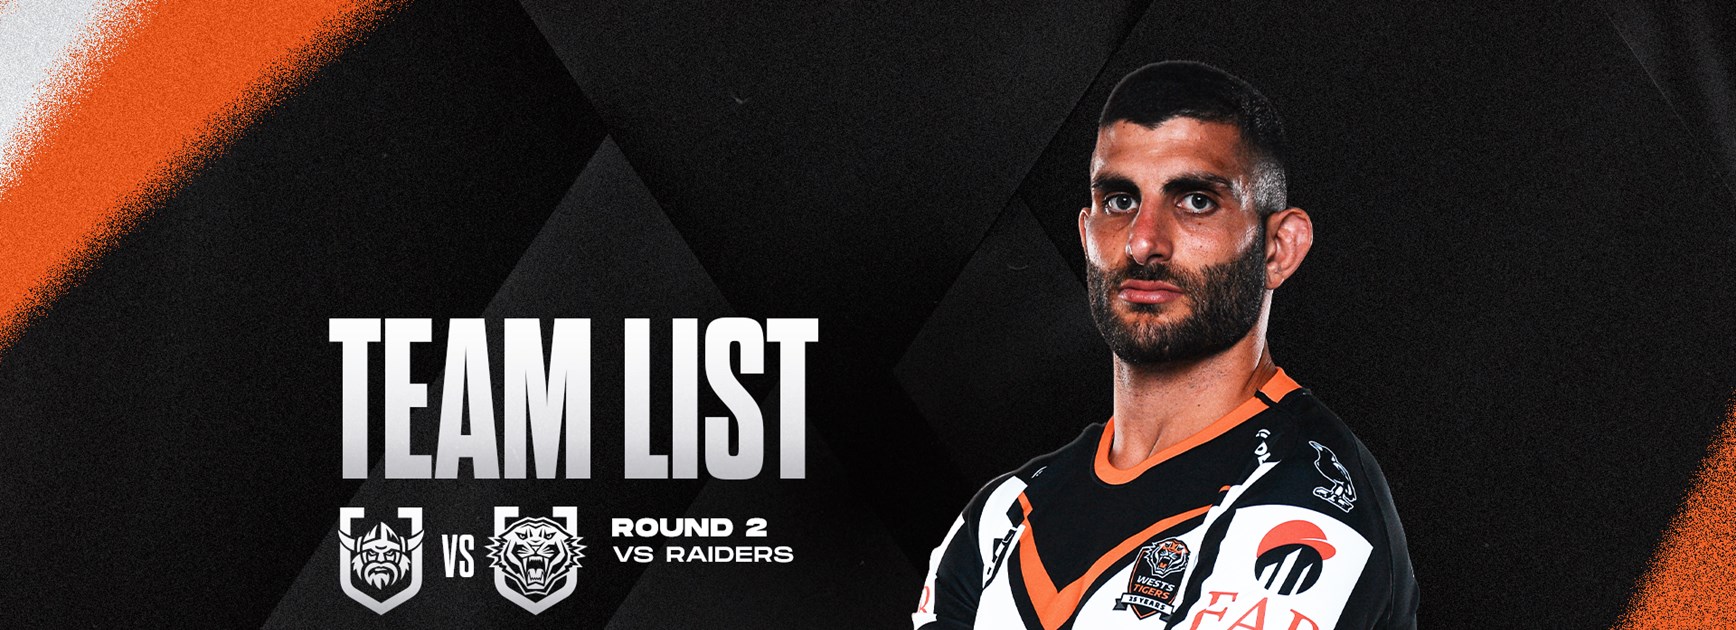 Team List: NRL Round 2 vs Raiders